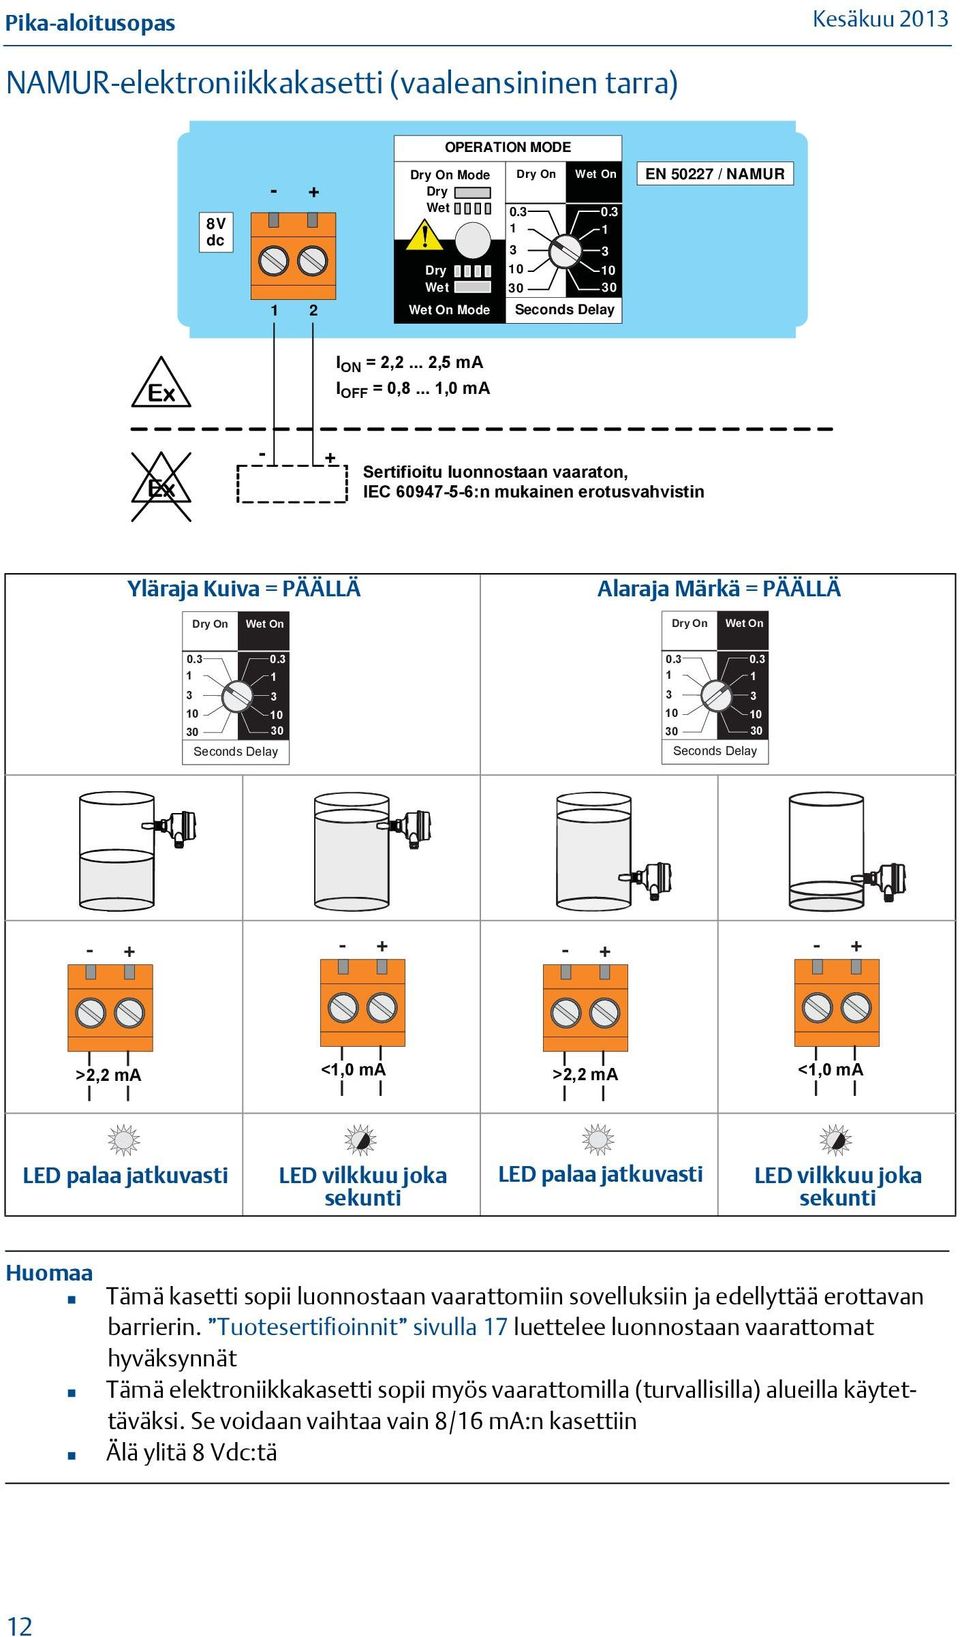 IEC 60947-5-6:n amplifier to mukainen IEC 60947-5-6 erotusvahvistin Yläraja Kuiva = PÄÄLLÄ Alaraja Märkä = PÄÄLLÄ Dry On Wet On Dry On Wet On 0. 0. 0 0 Seconds Delay 0. 0. 0 0 Seconds Delay - - - - >2,2 >2.